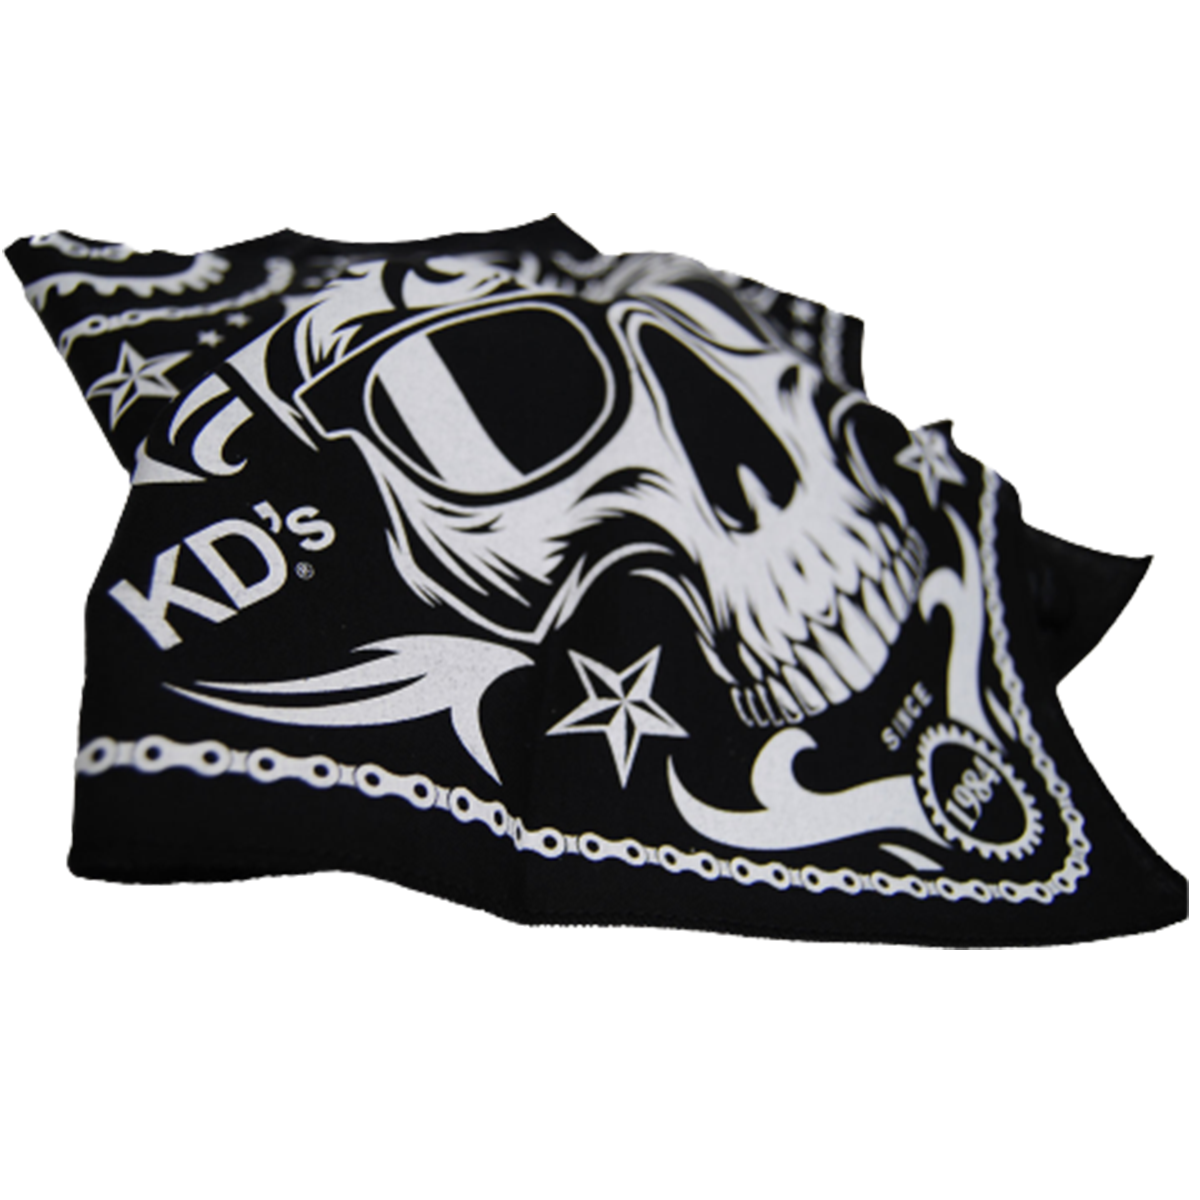 Kd's classic - Bandana skull - noir et blanc